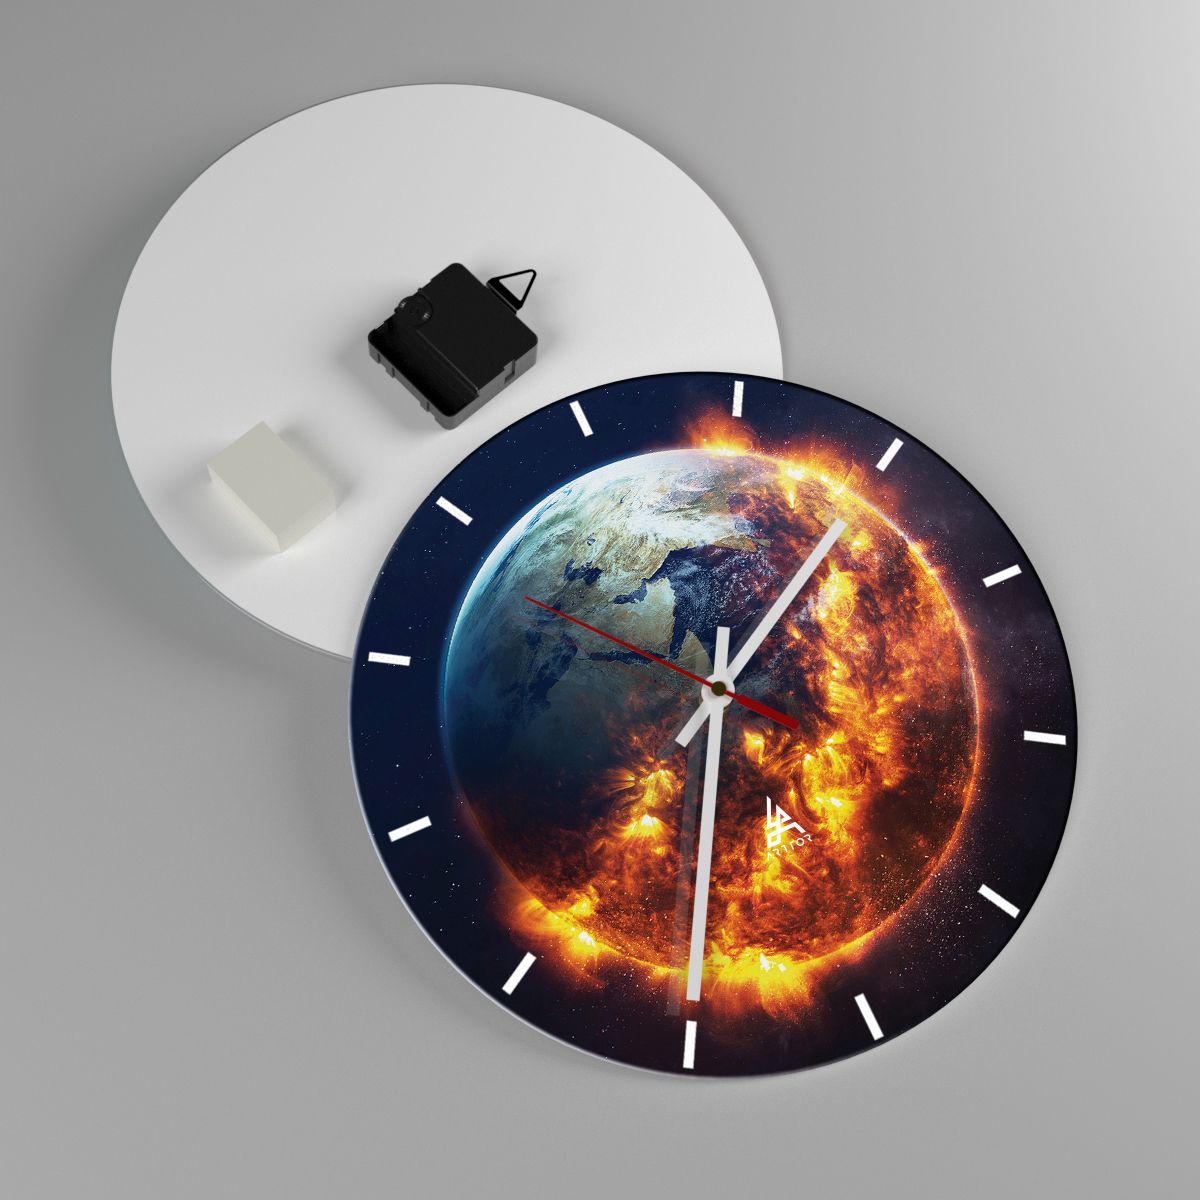 Horloge murale Cosmos, Horloge murale Planète Terre, Horloge murale Flammes De Feu, Horloge murale Globe, Horloge murale Apocalypse